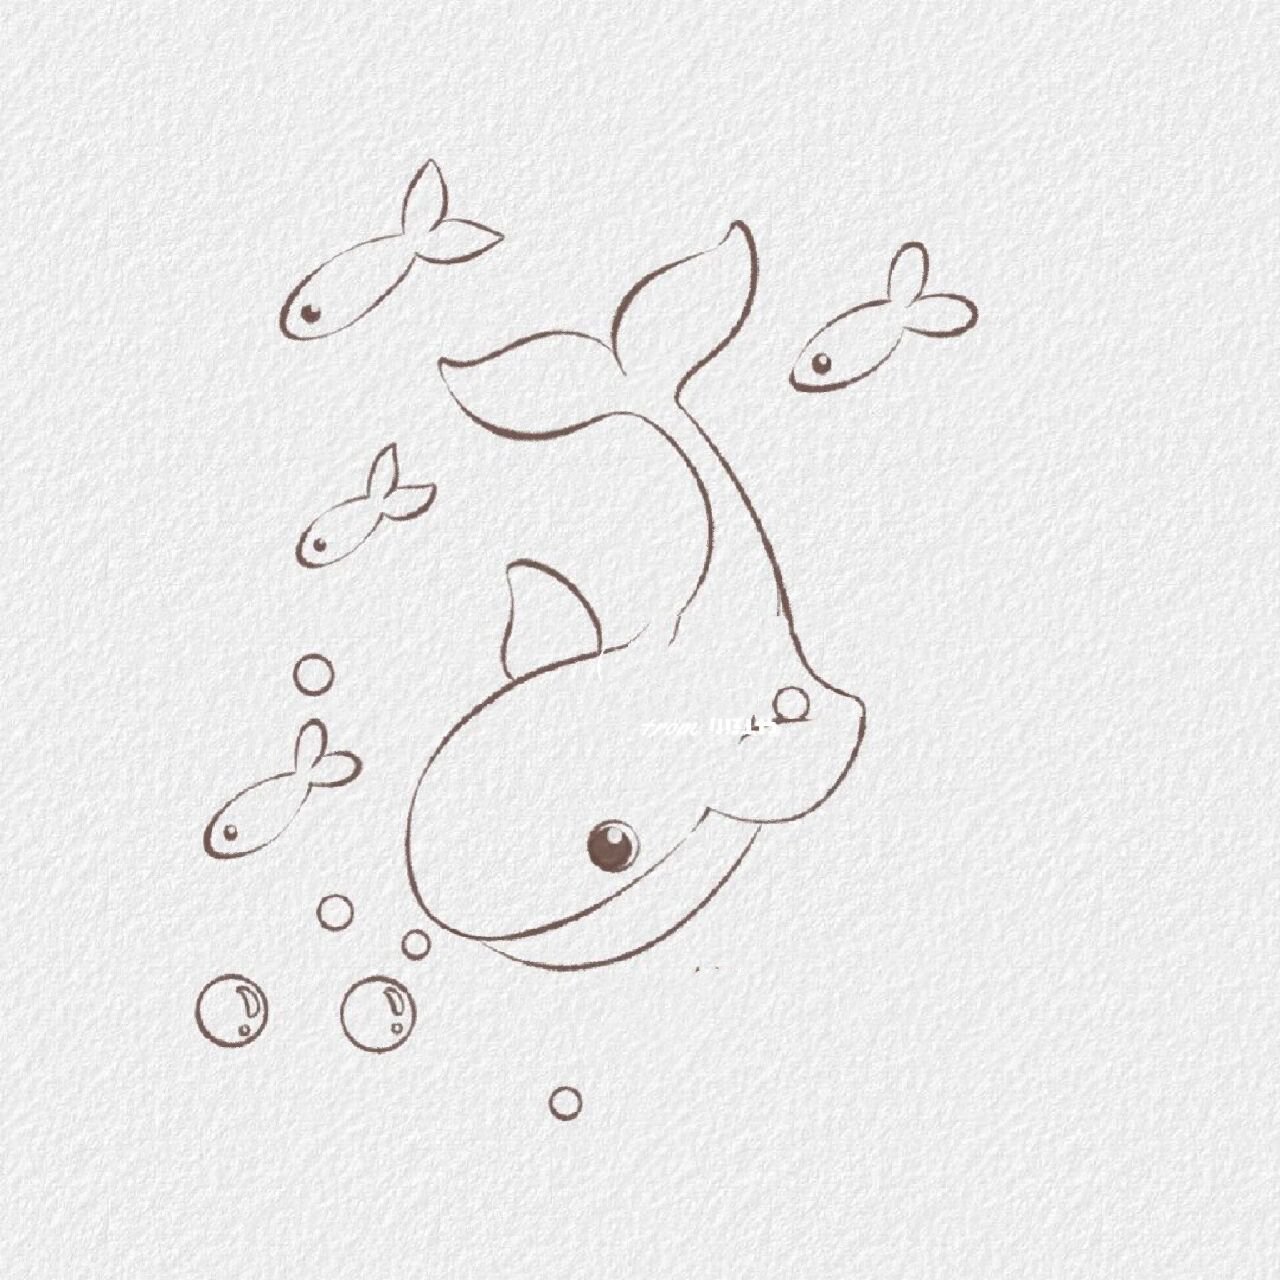 简笔画鲸鱼 海里图片